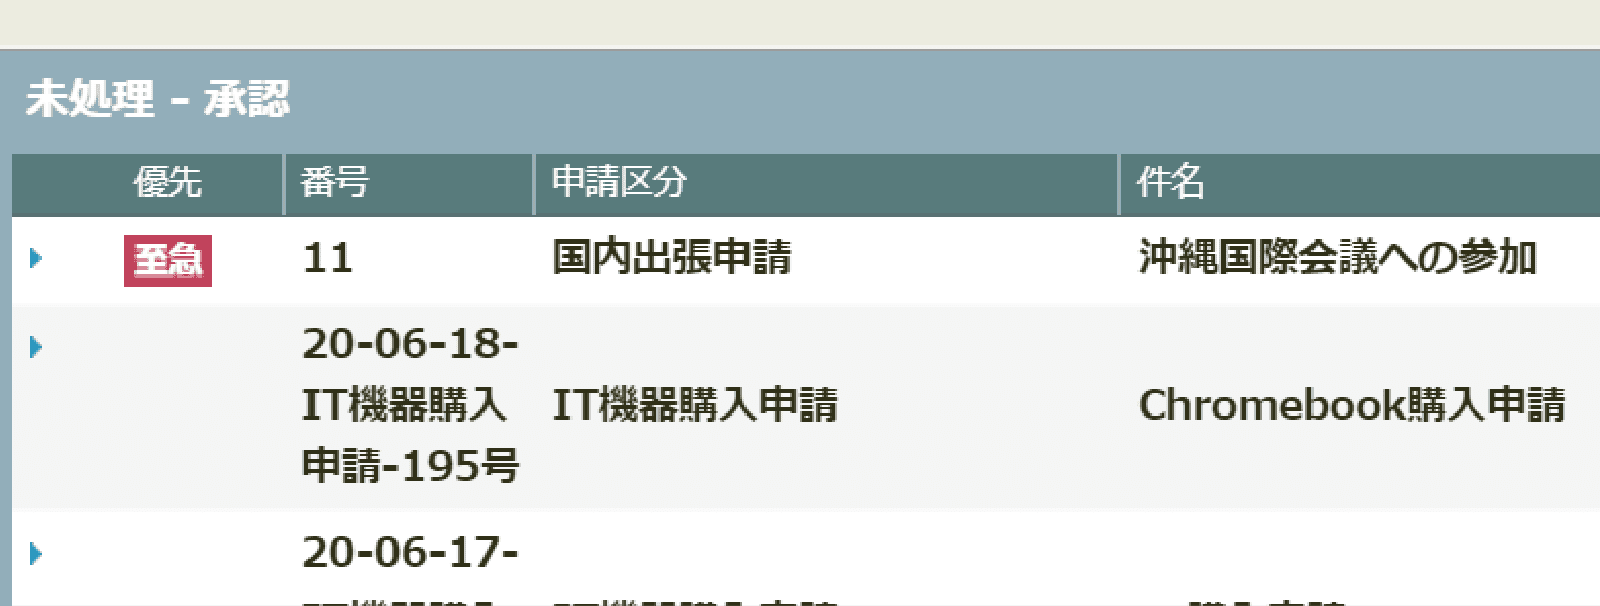 rakumo ワークフロー 申請書一覧画面での「至急」表示イメージ